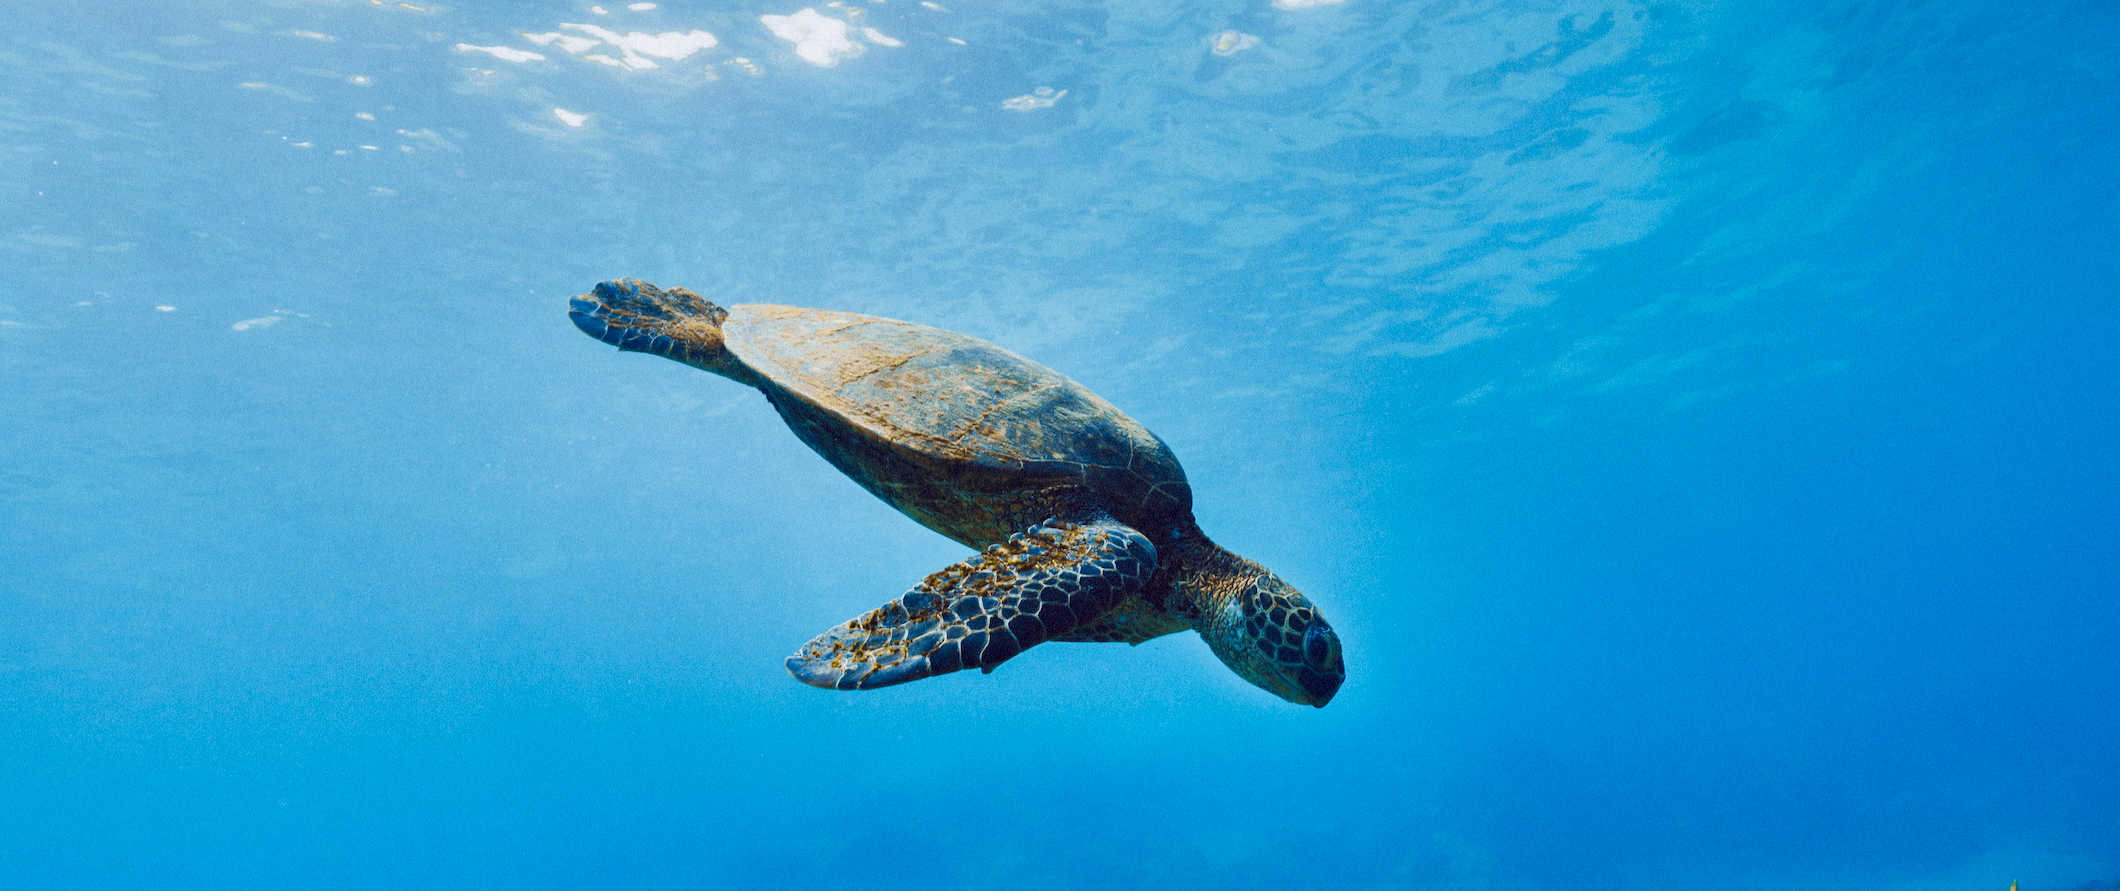 A tartaruga nada debaixo d'água nas águas azuis transparentes das Ilhas Galápagos no Equador